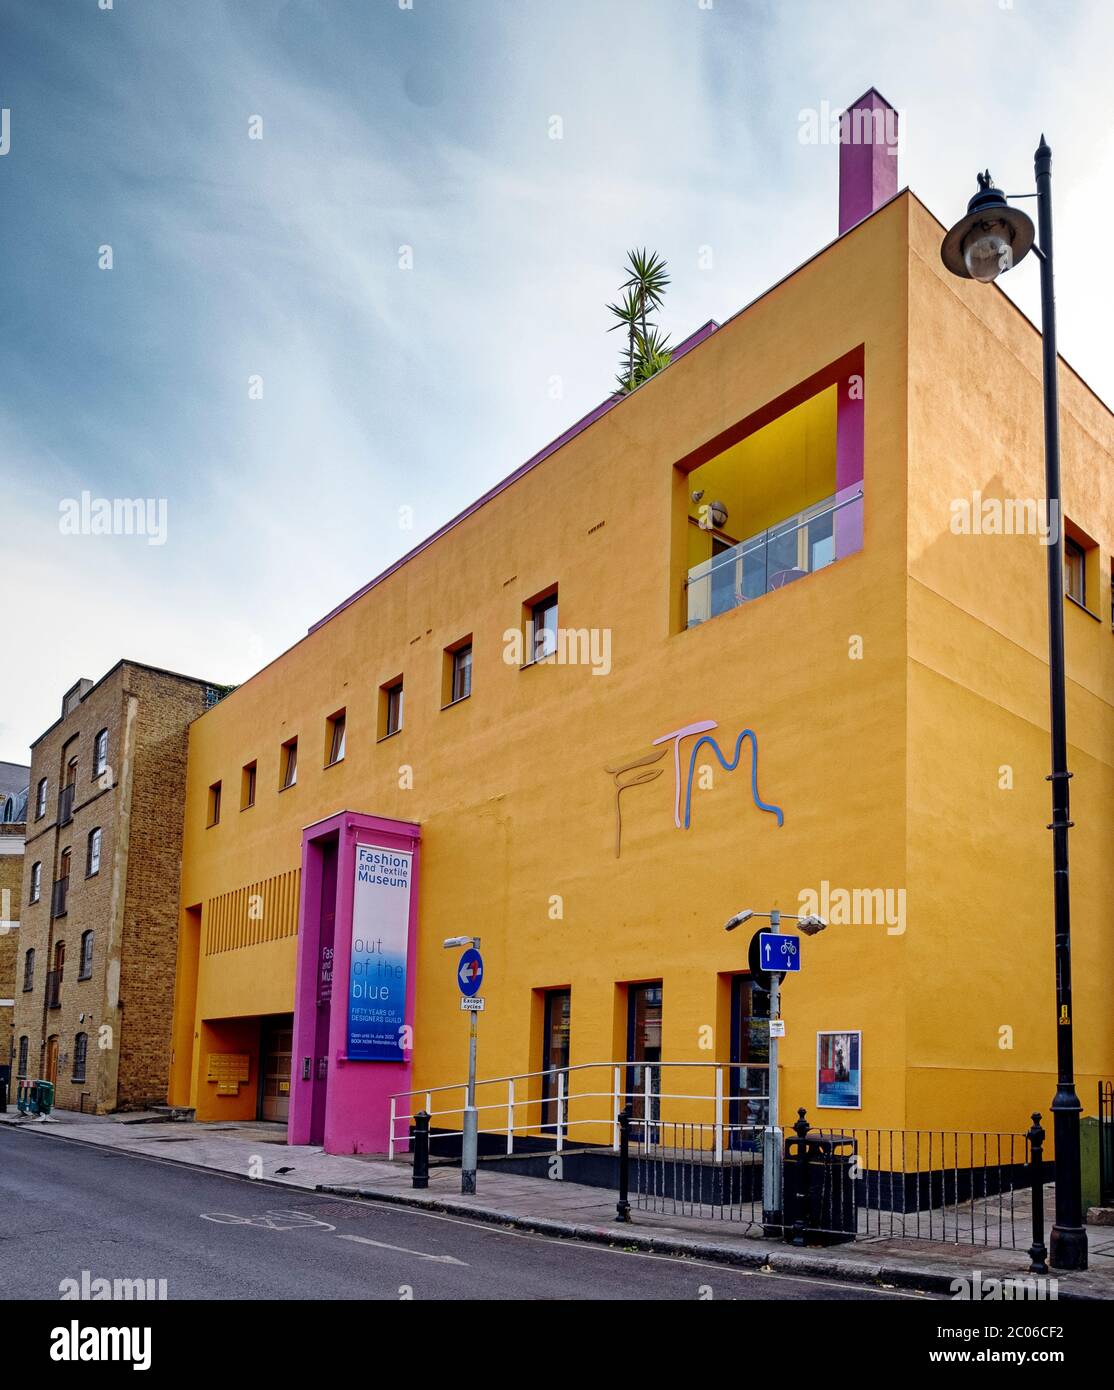 Musée du textile de mode, Bermondsey Street, Londres, Angleterre - un musée dédié à la mode contemporaine et au design textile Banque D'Images